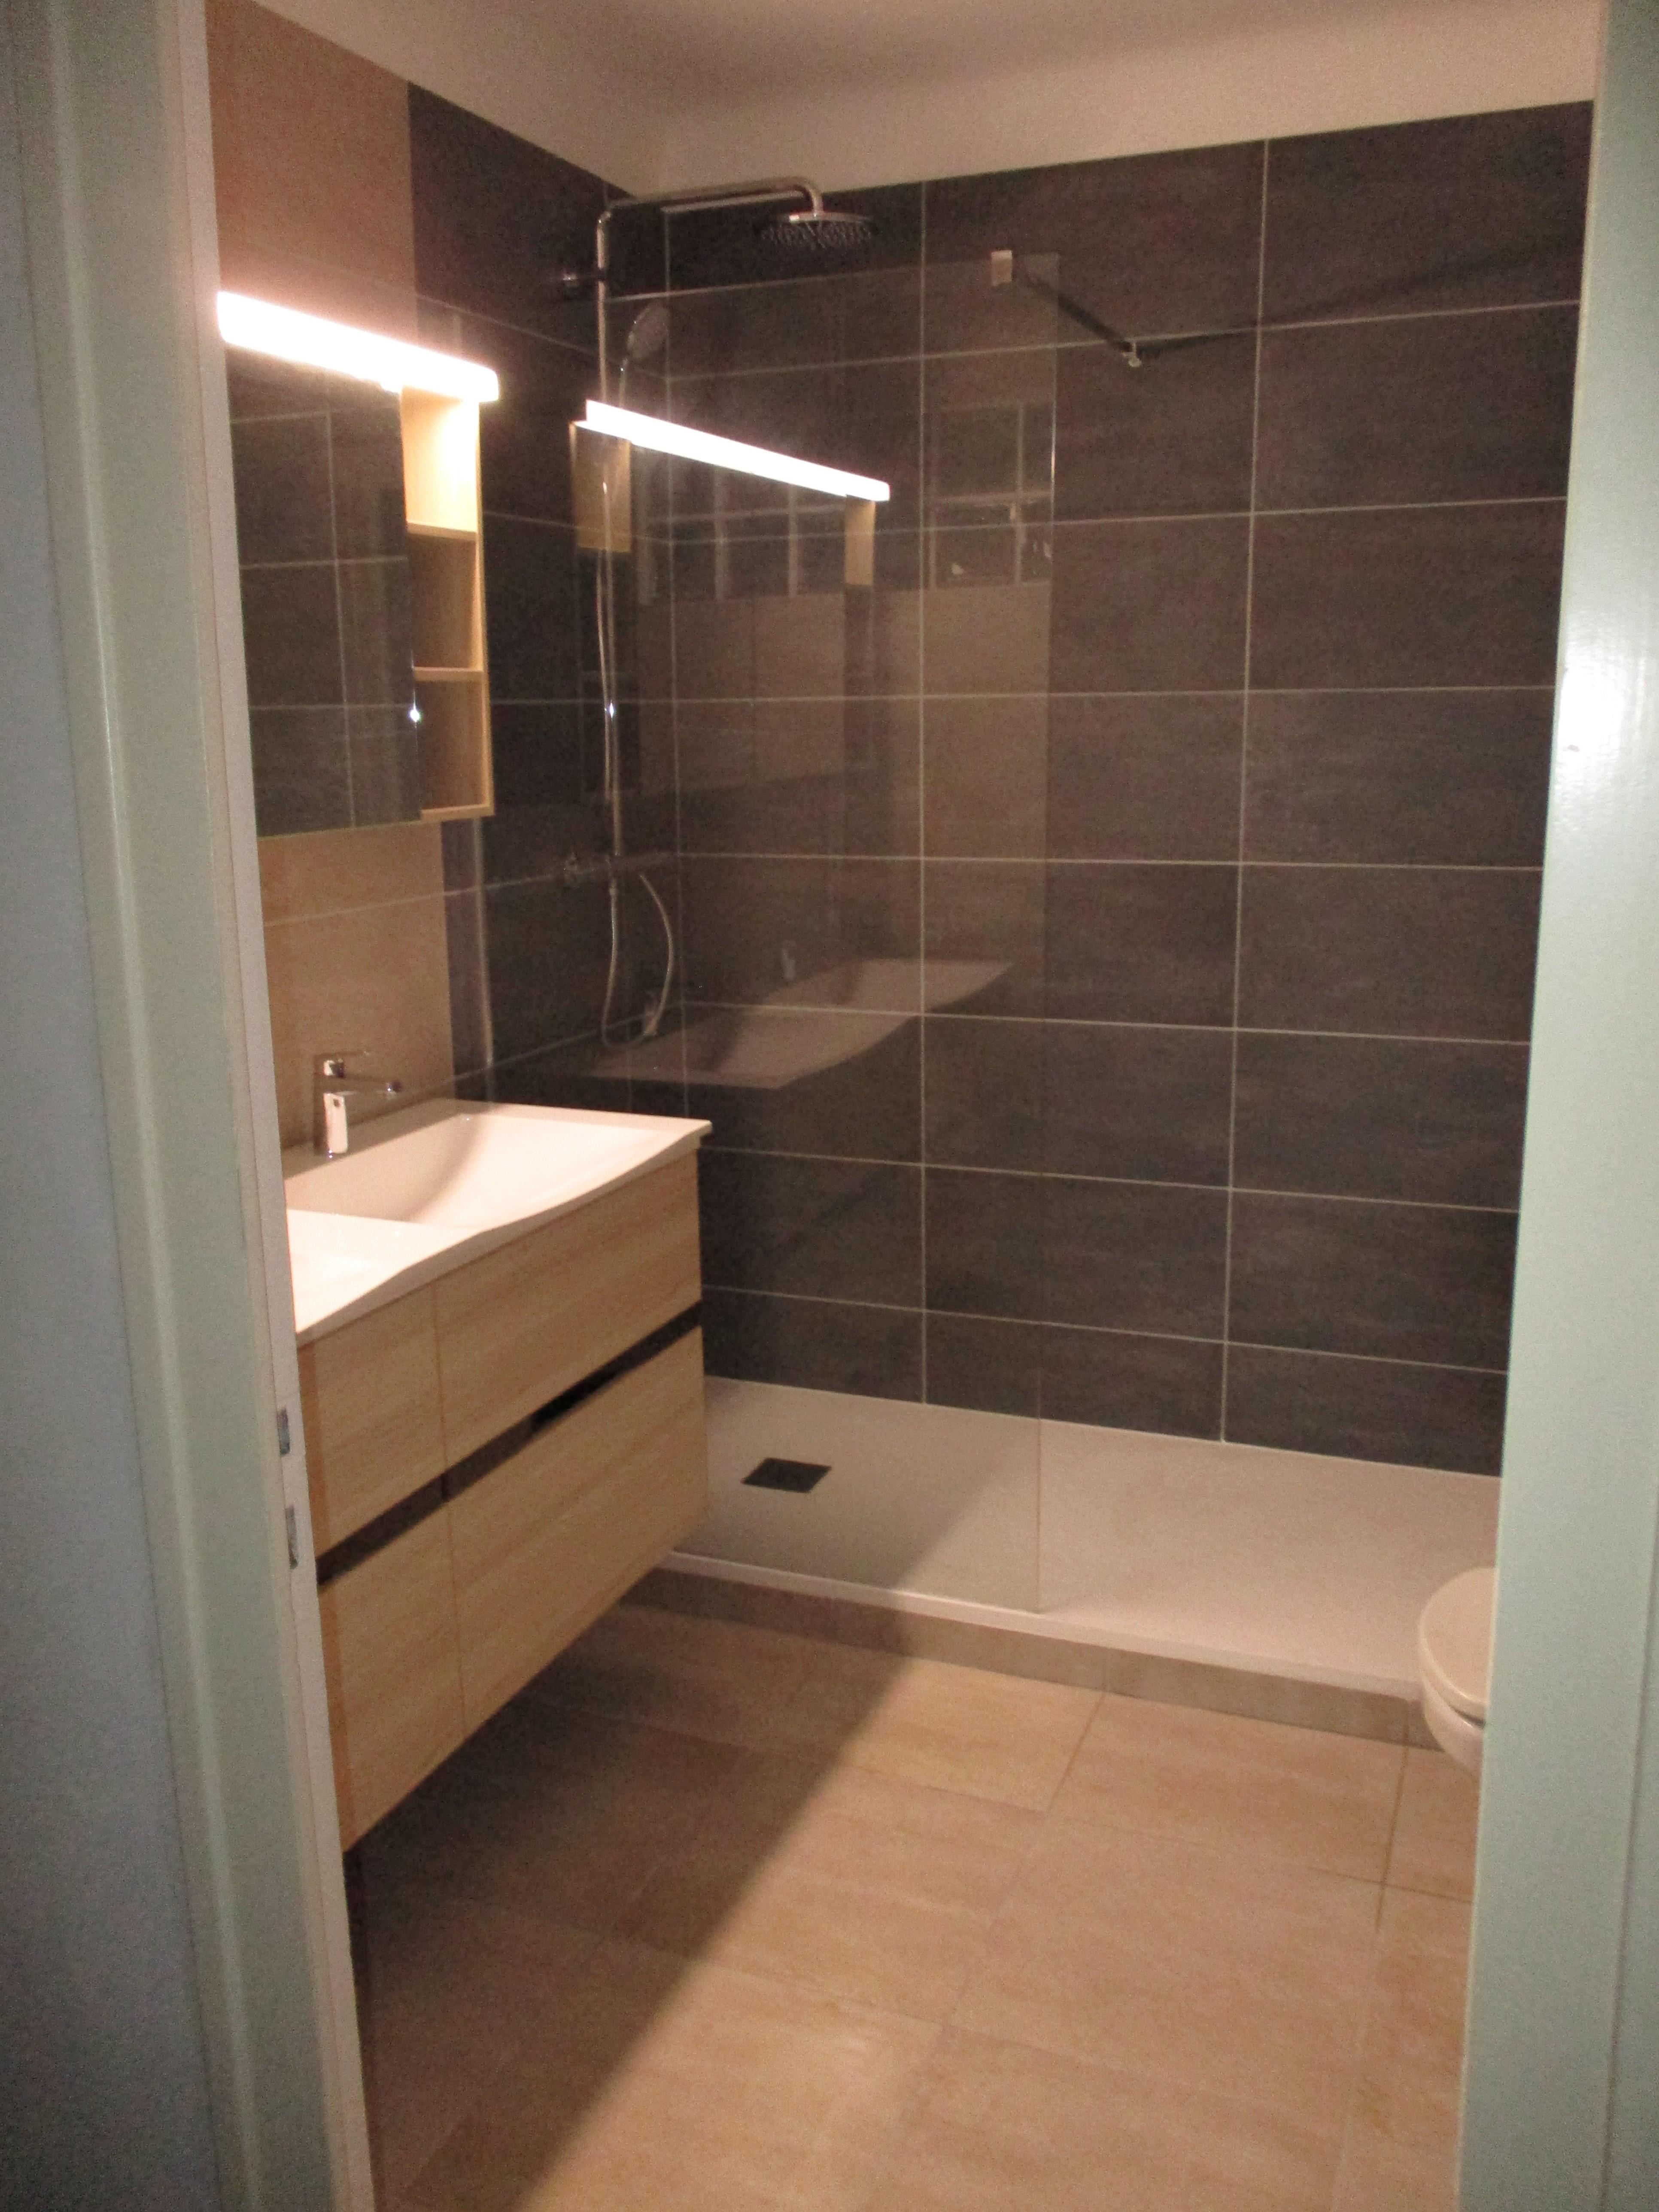 LUSSIEZ Rémi, Rénovation complète salle de bain